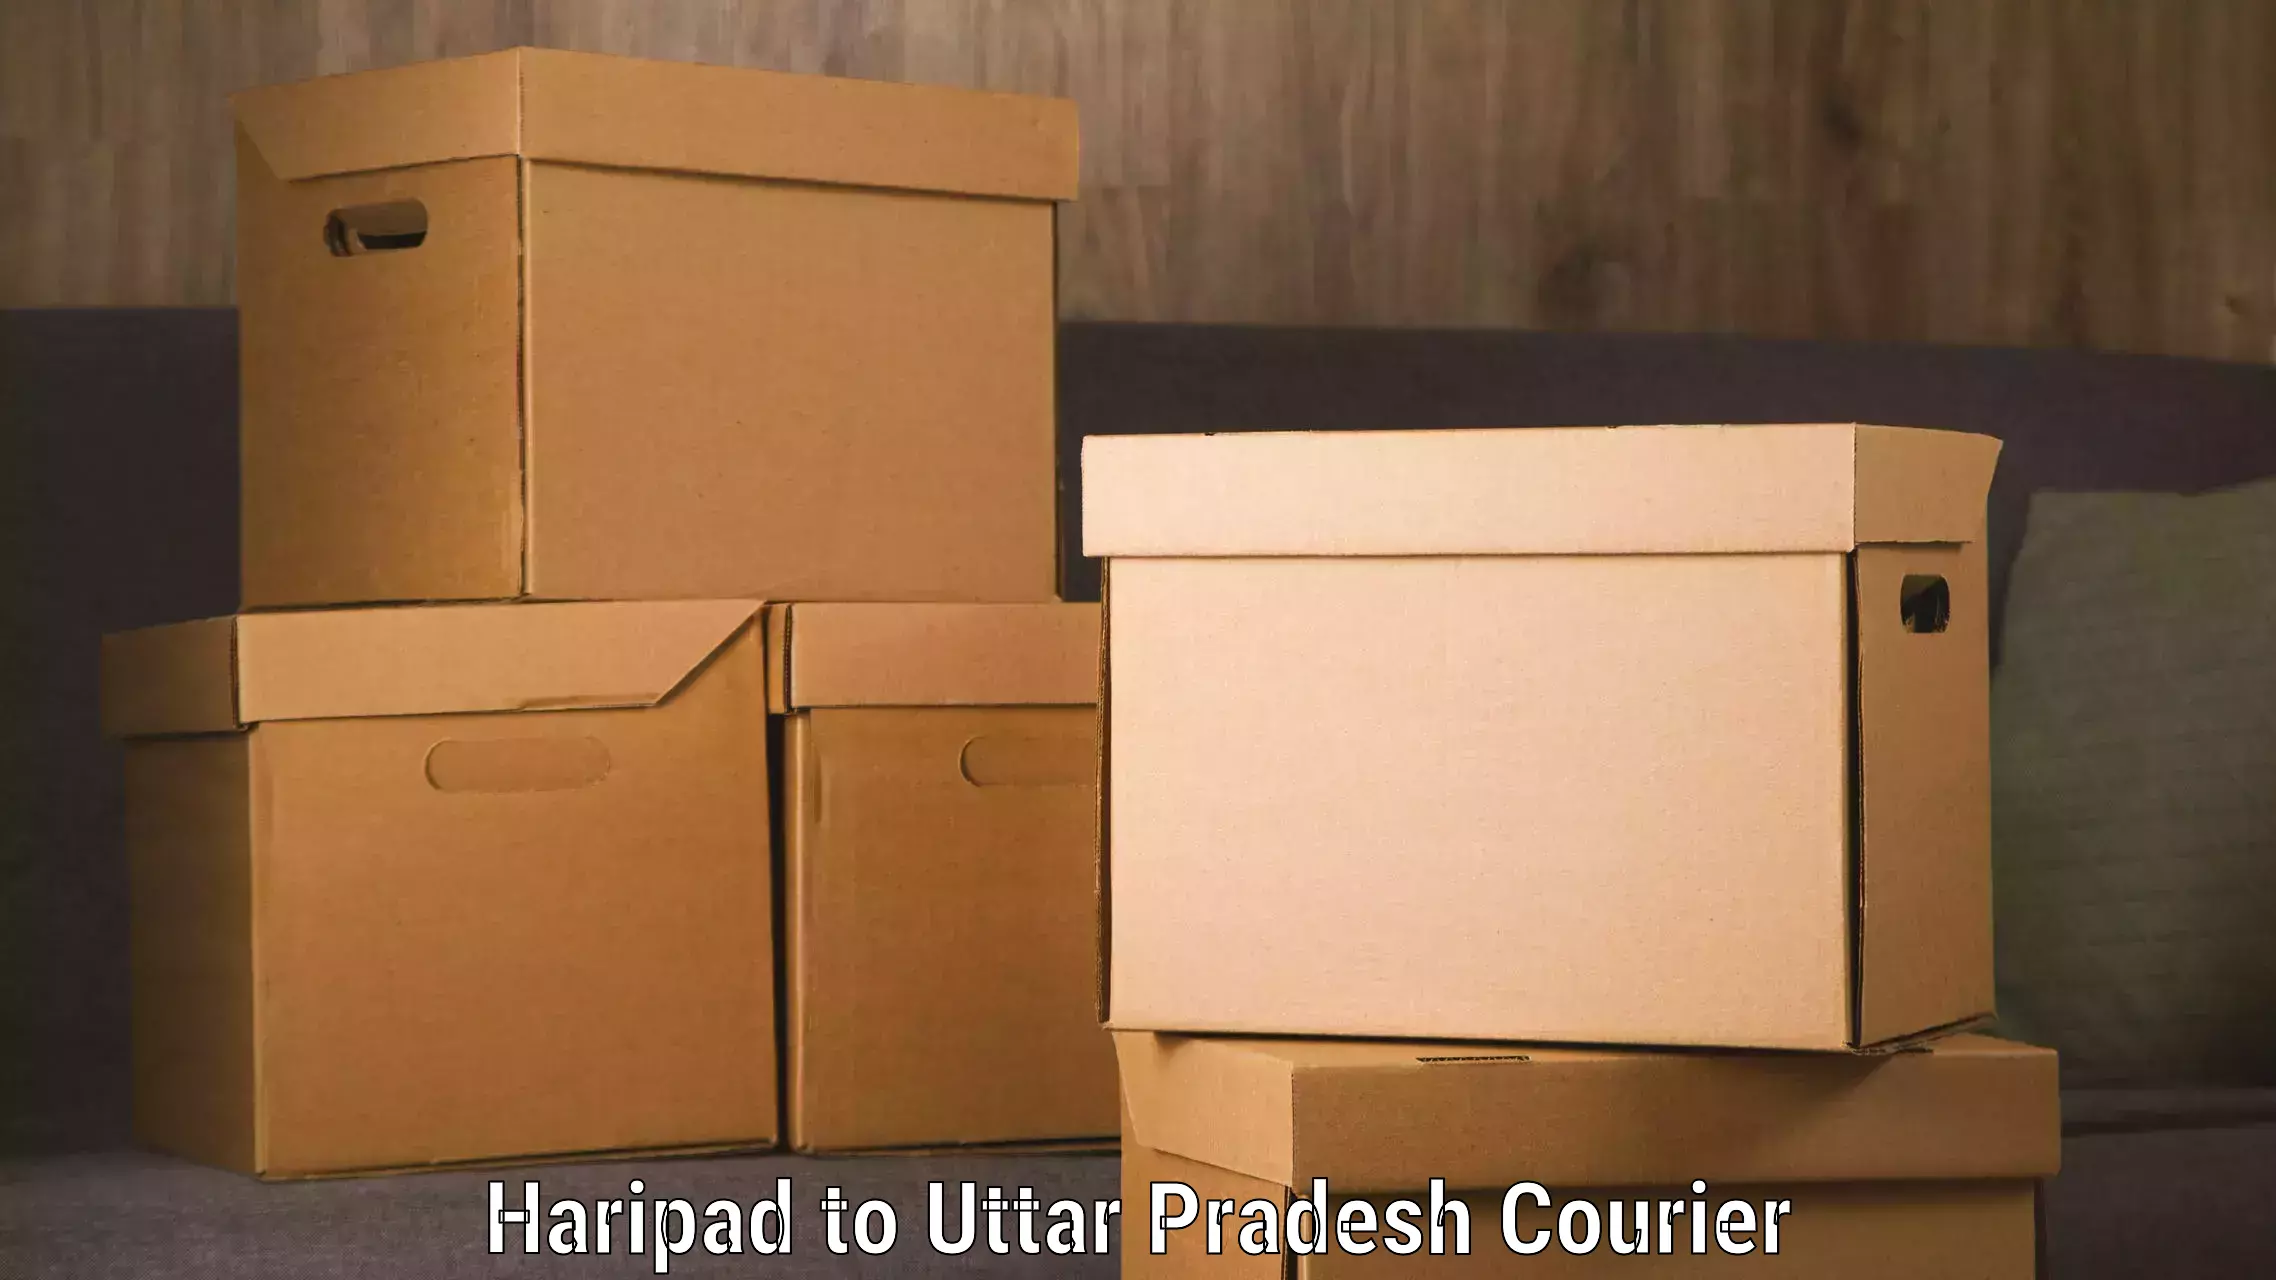 Digital courier platforms Haripad to Parora